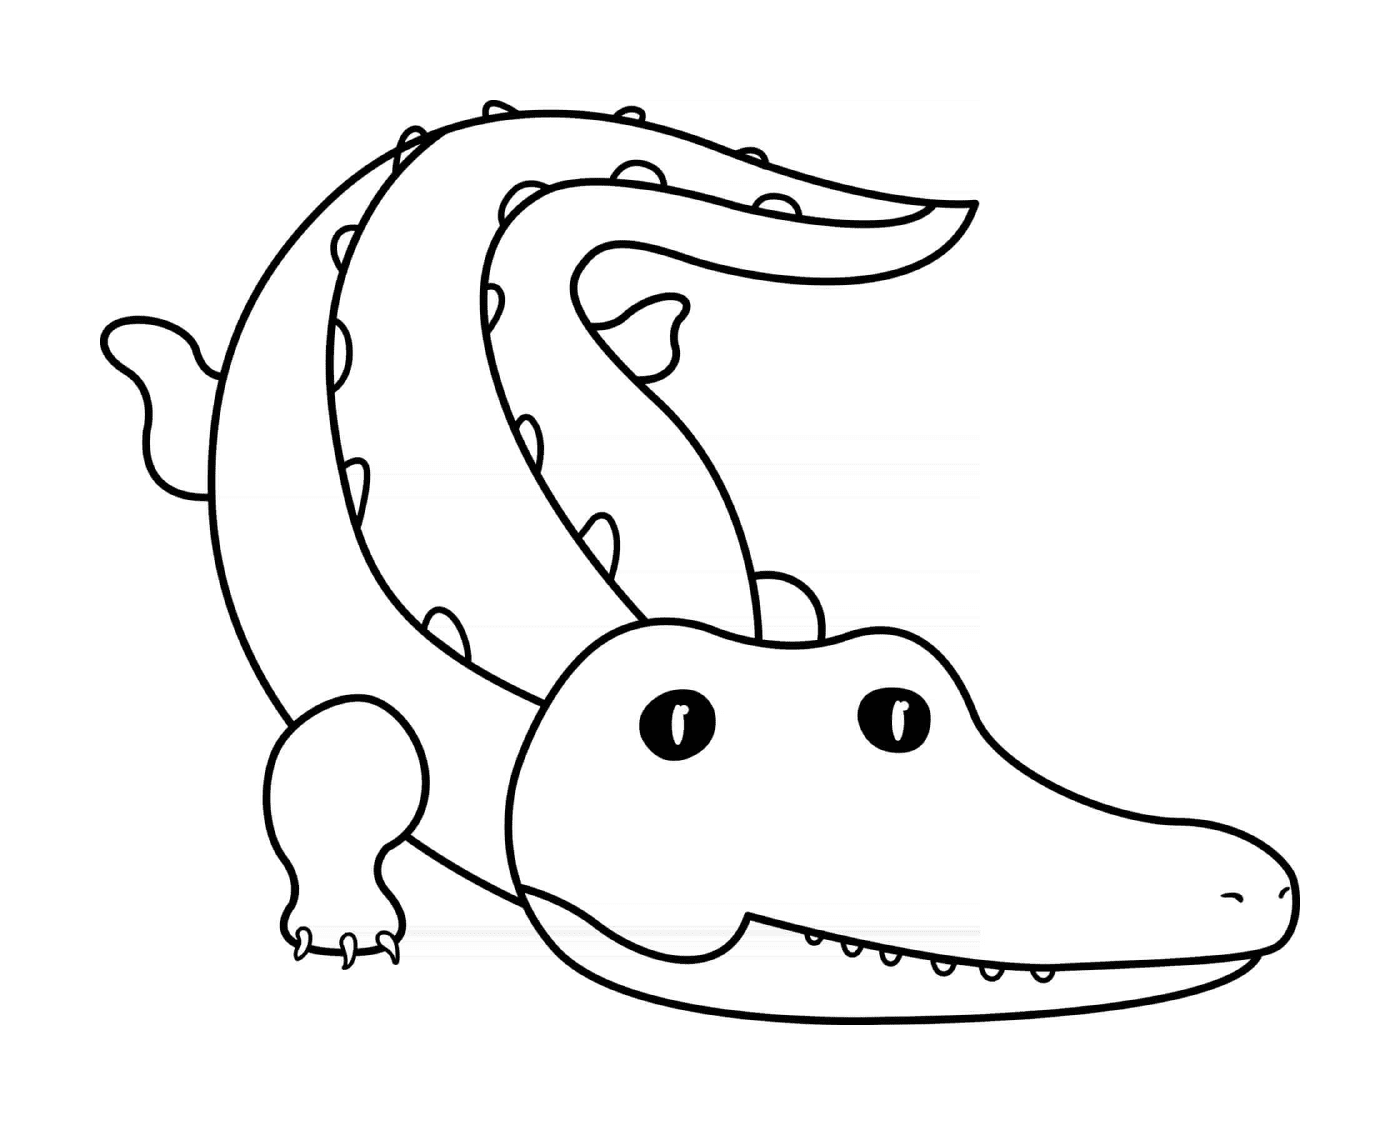  Krokodil, ein großes Reptil 